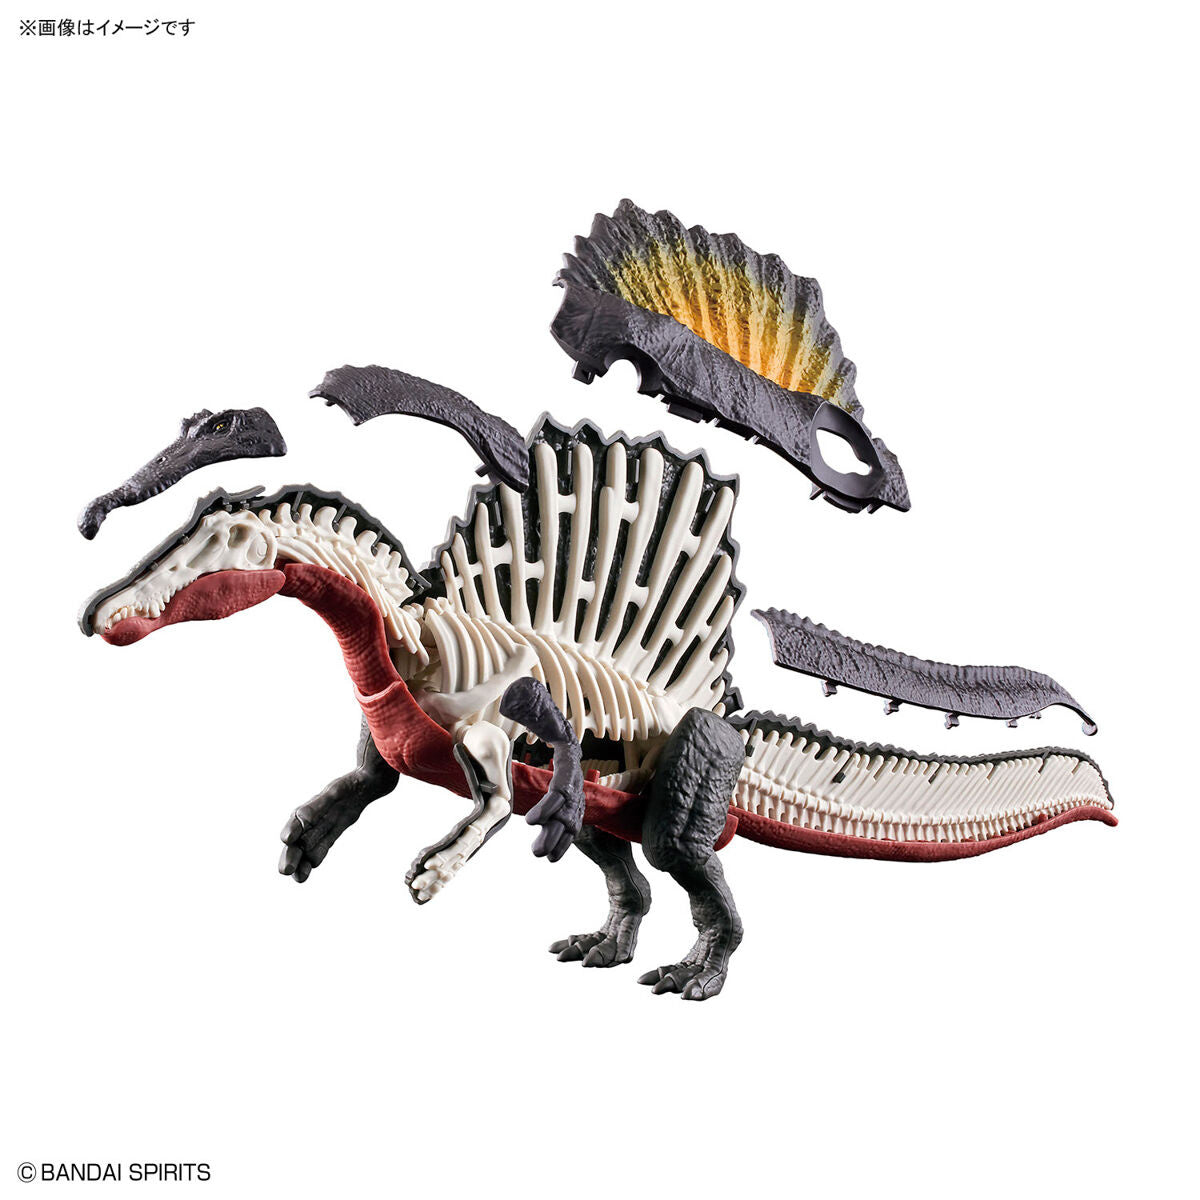 Plannosaurus - Spinosaurus